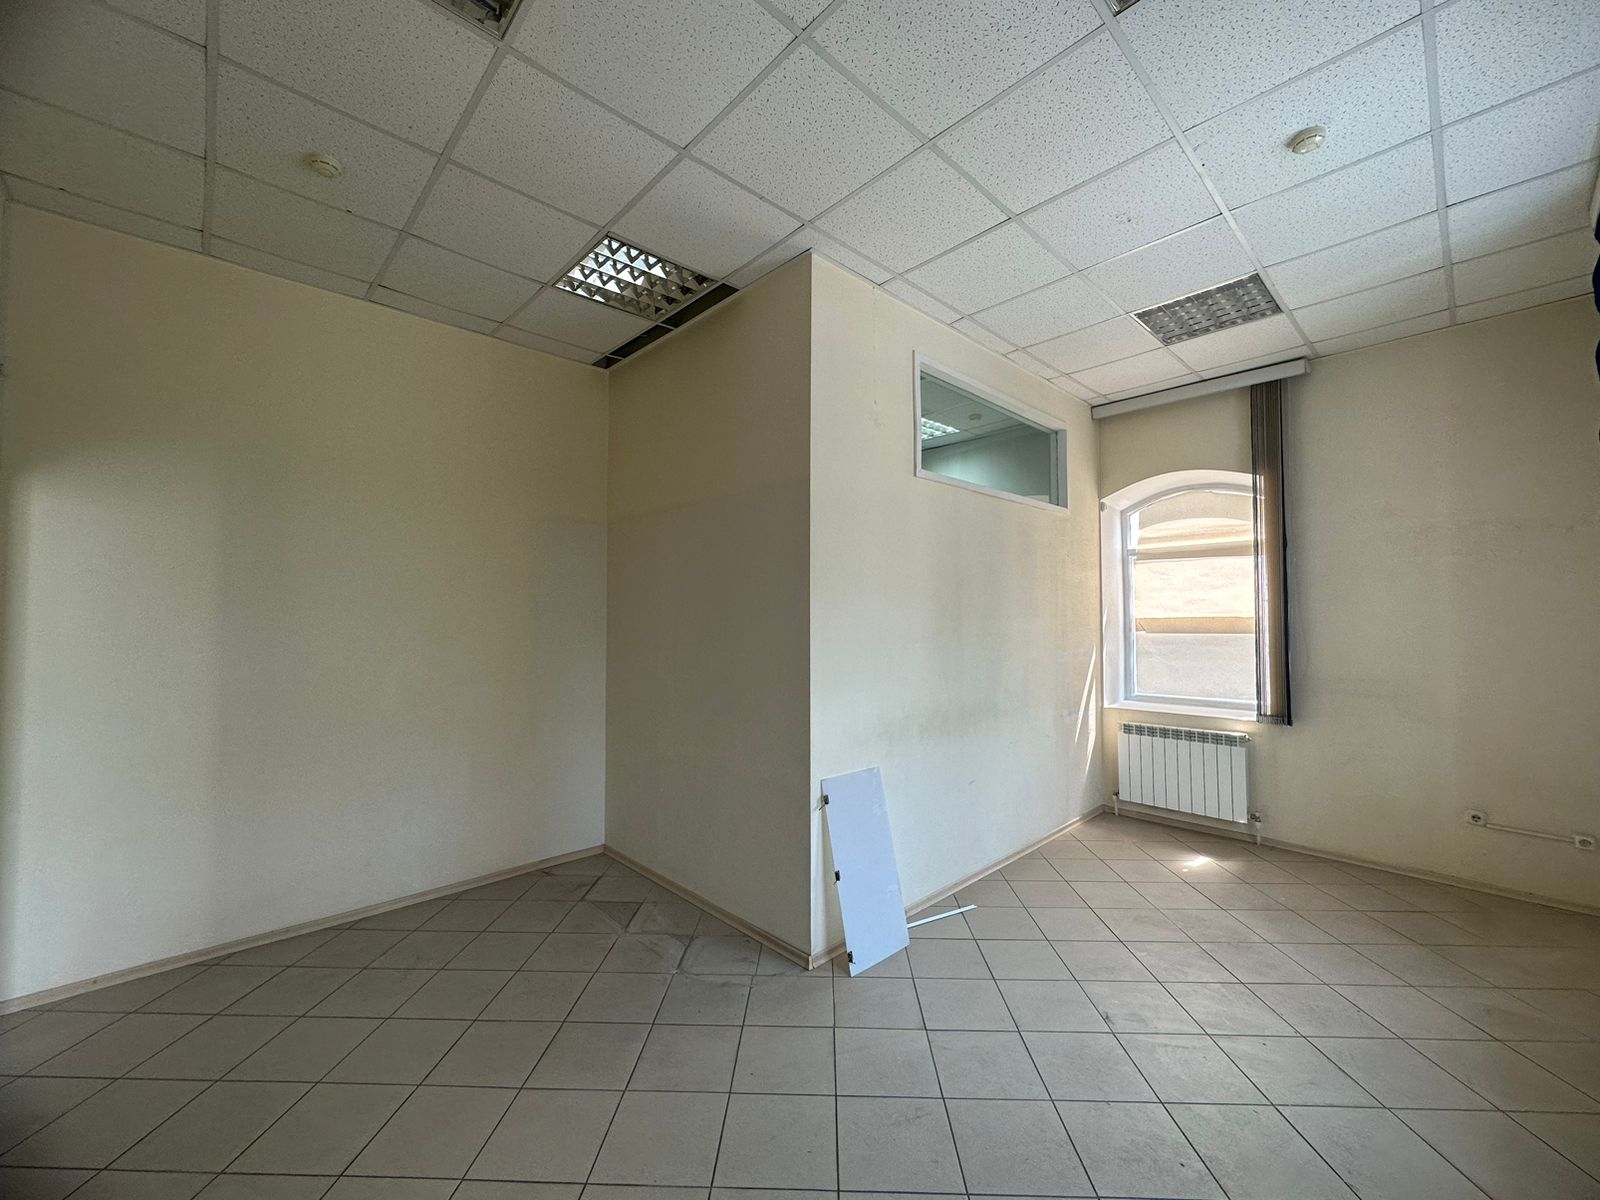 Предлагаем к аренде помещение на 2ом этаже по ул. Карла Маркса д.53, общей площадью 140 м², напрямую от собственника._7